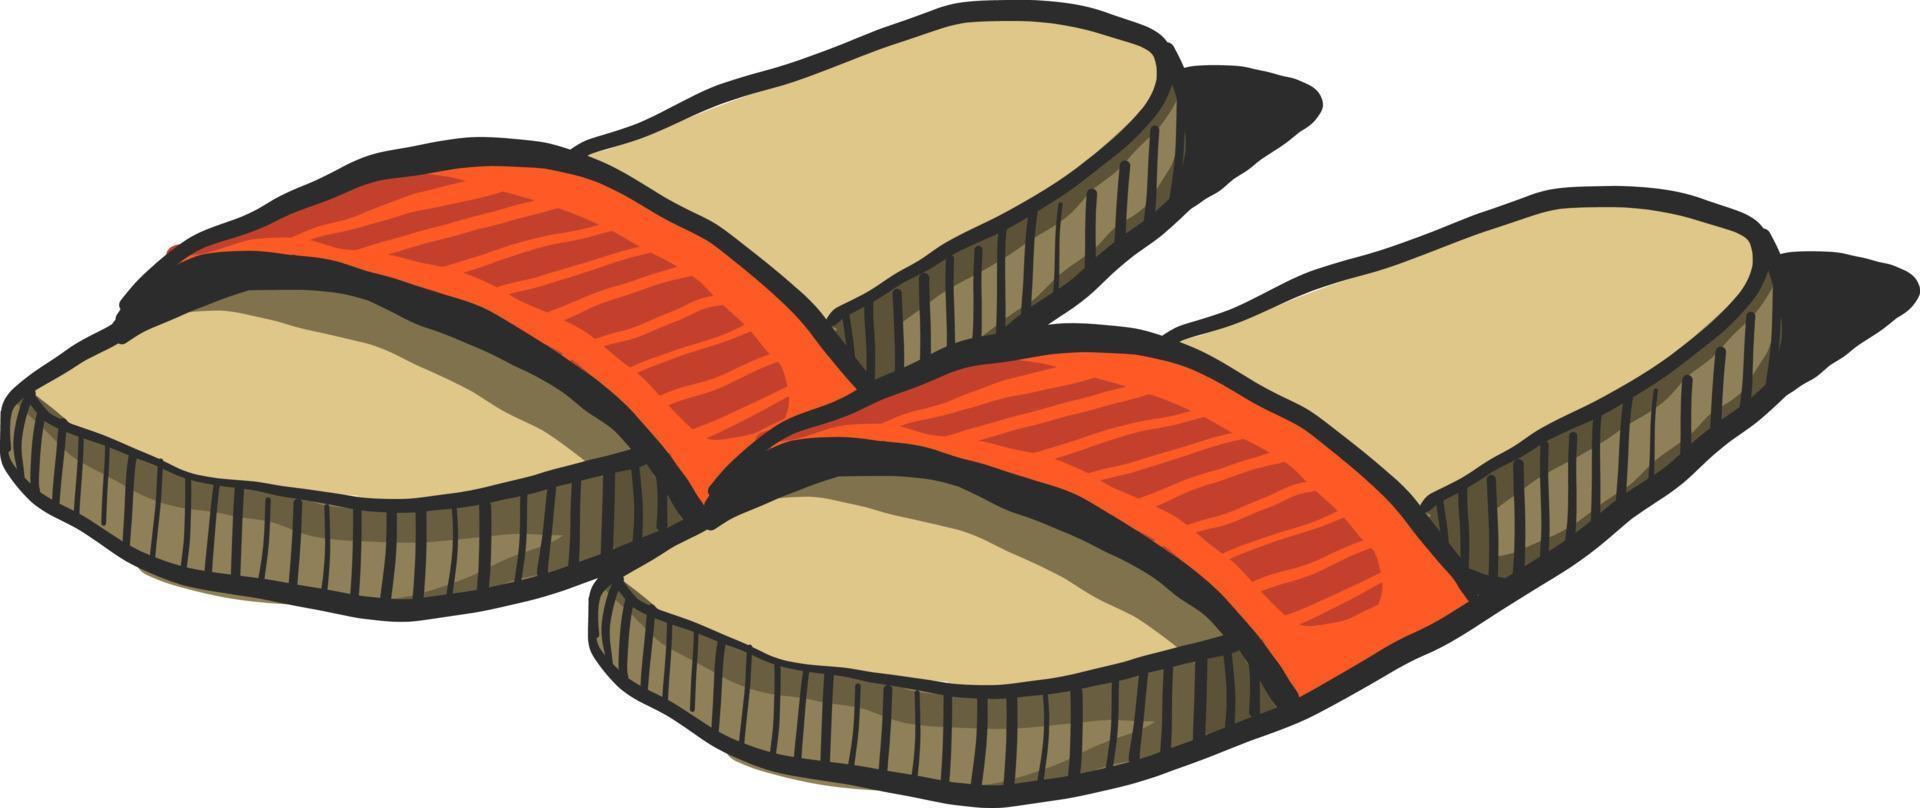 Zapatillas de verano naranja, ilustración, vector sobre fondo blanco.